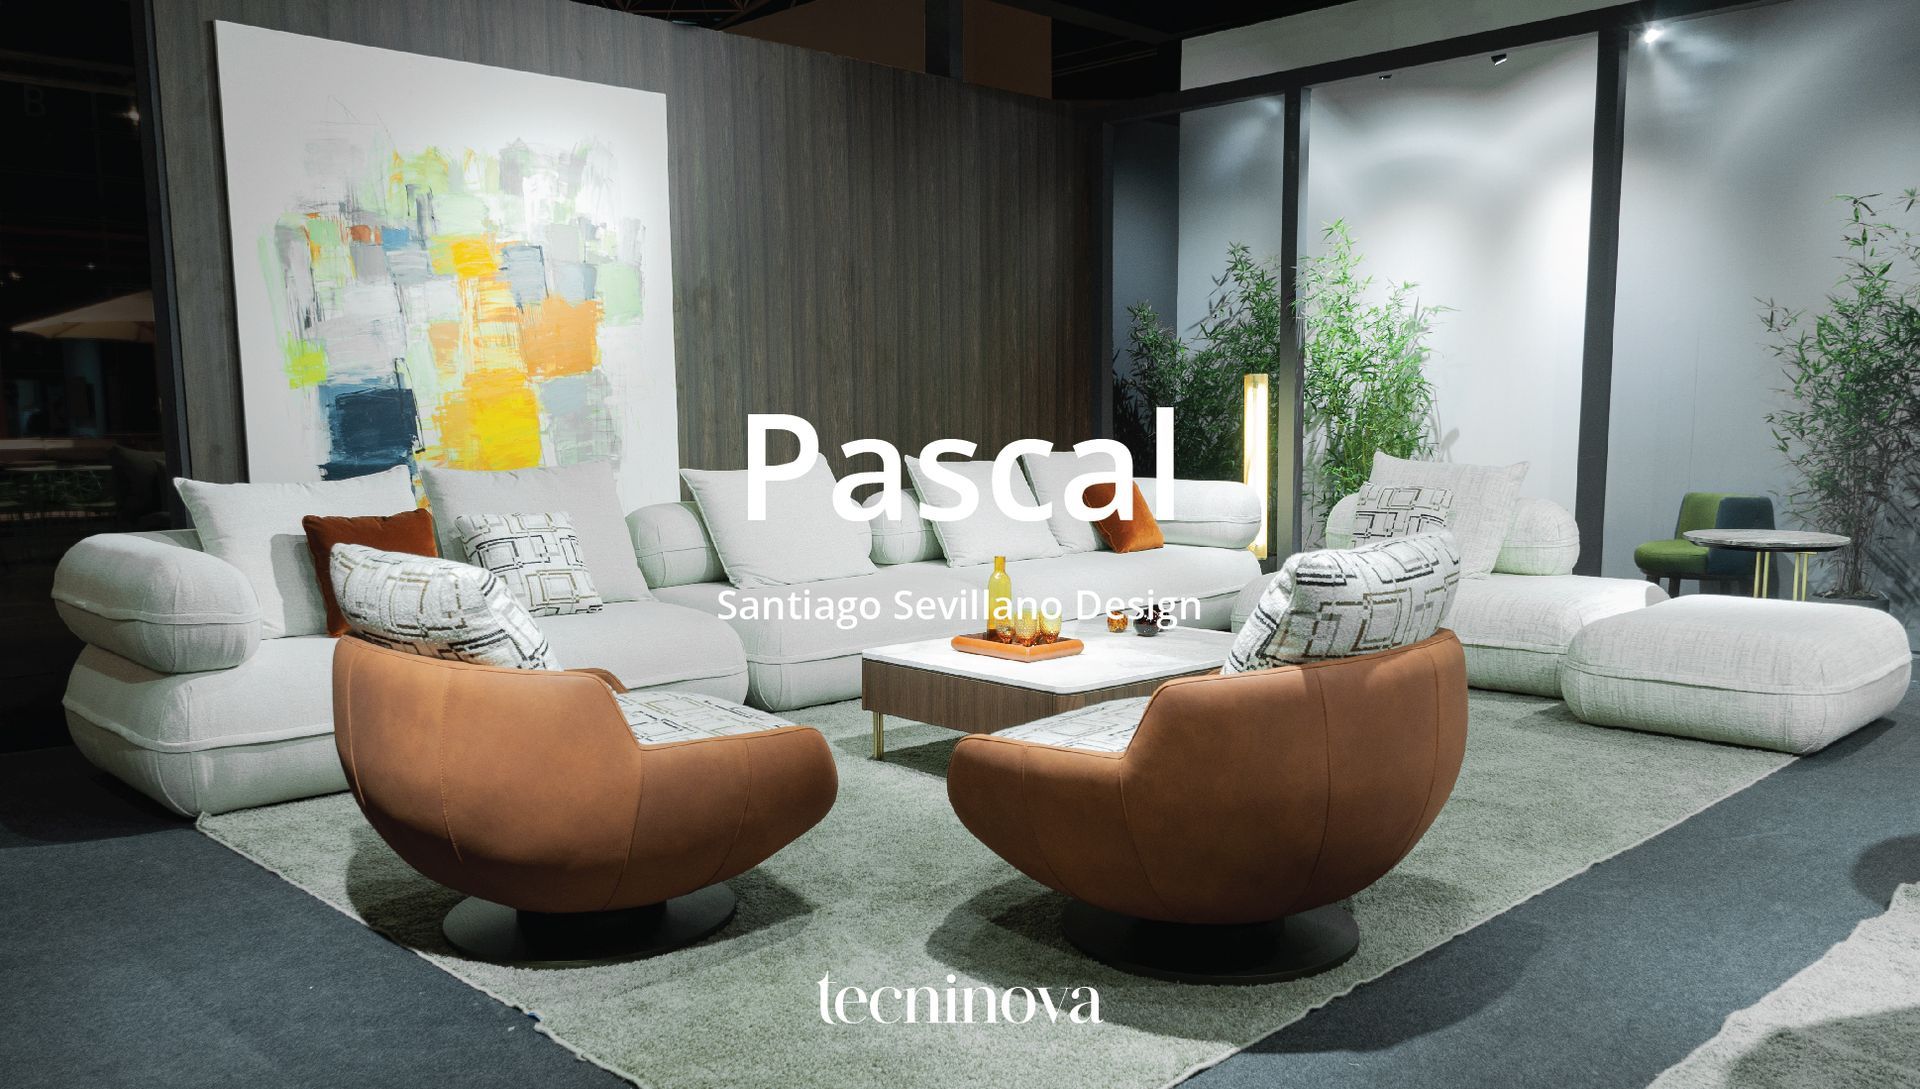 Pascal by santiago sevillano estudio